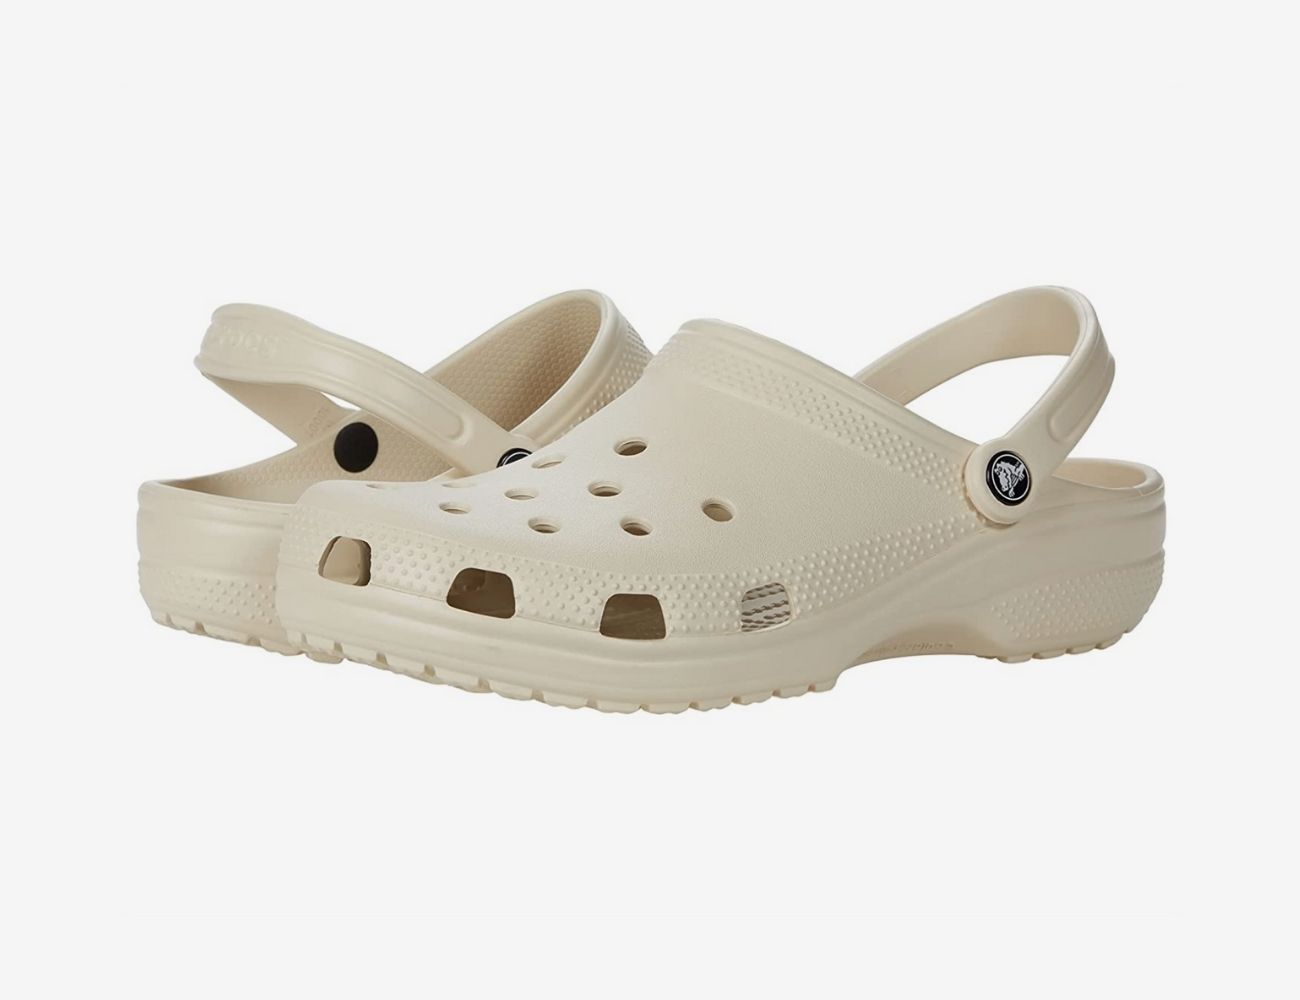 crocs shoes for sale near me